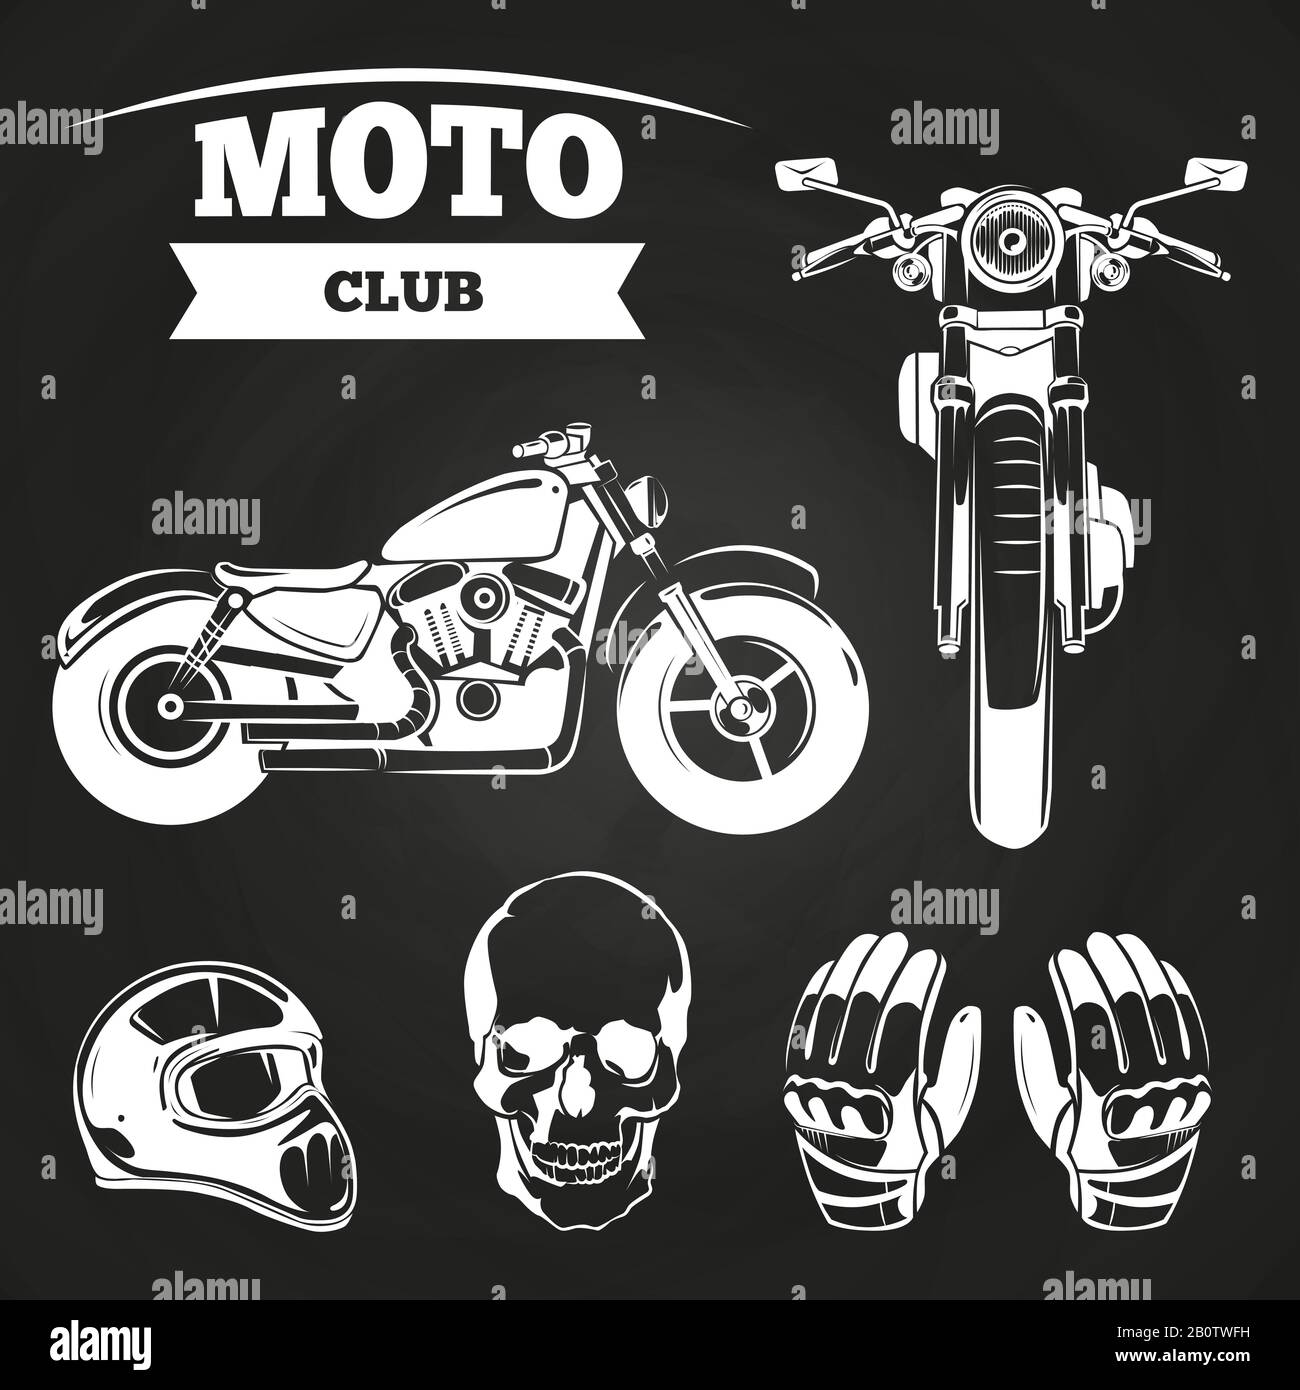 Objets moto club - crâne humain, moto, casque et gants sur le tableau noir. Illustration vectorielle Illustration de Vecteur